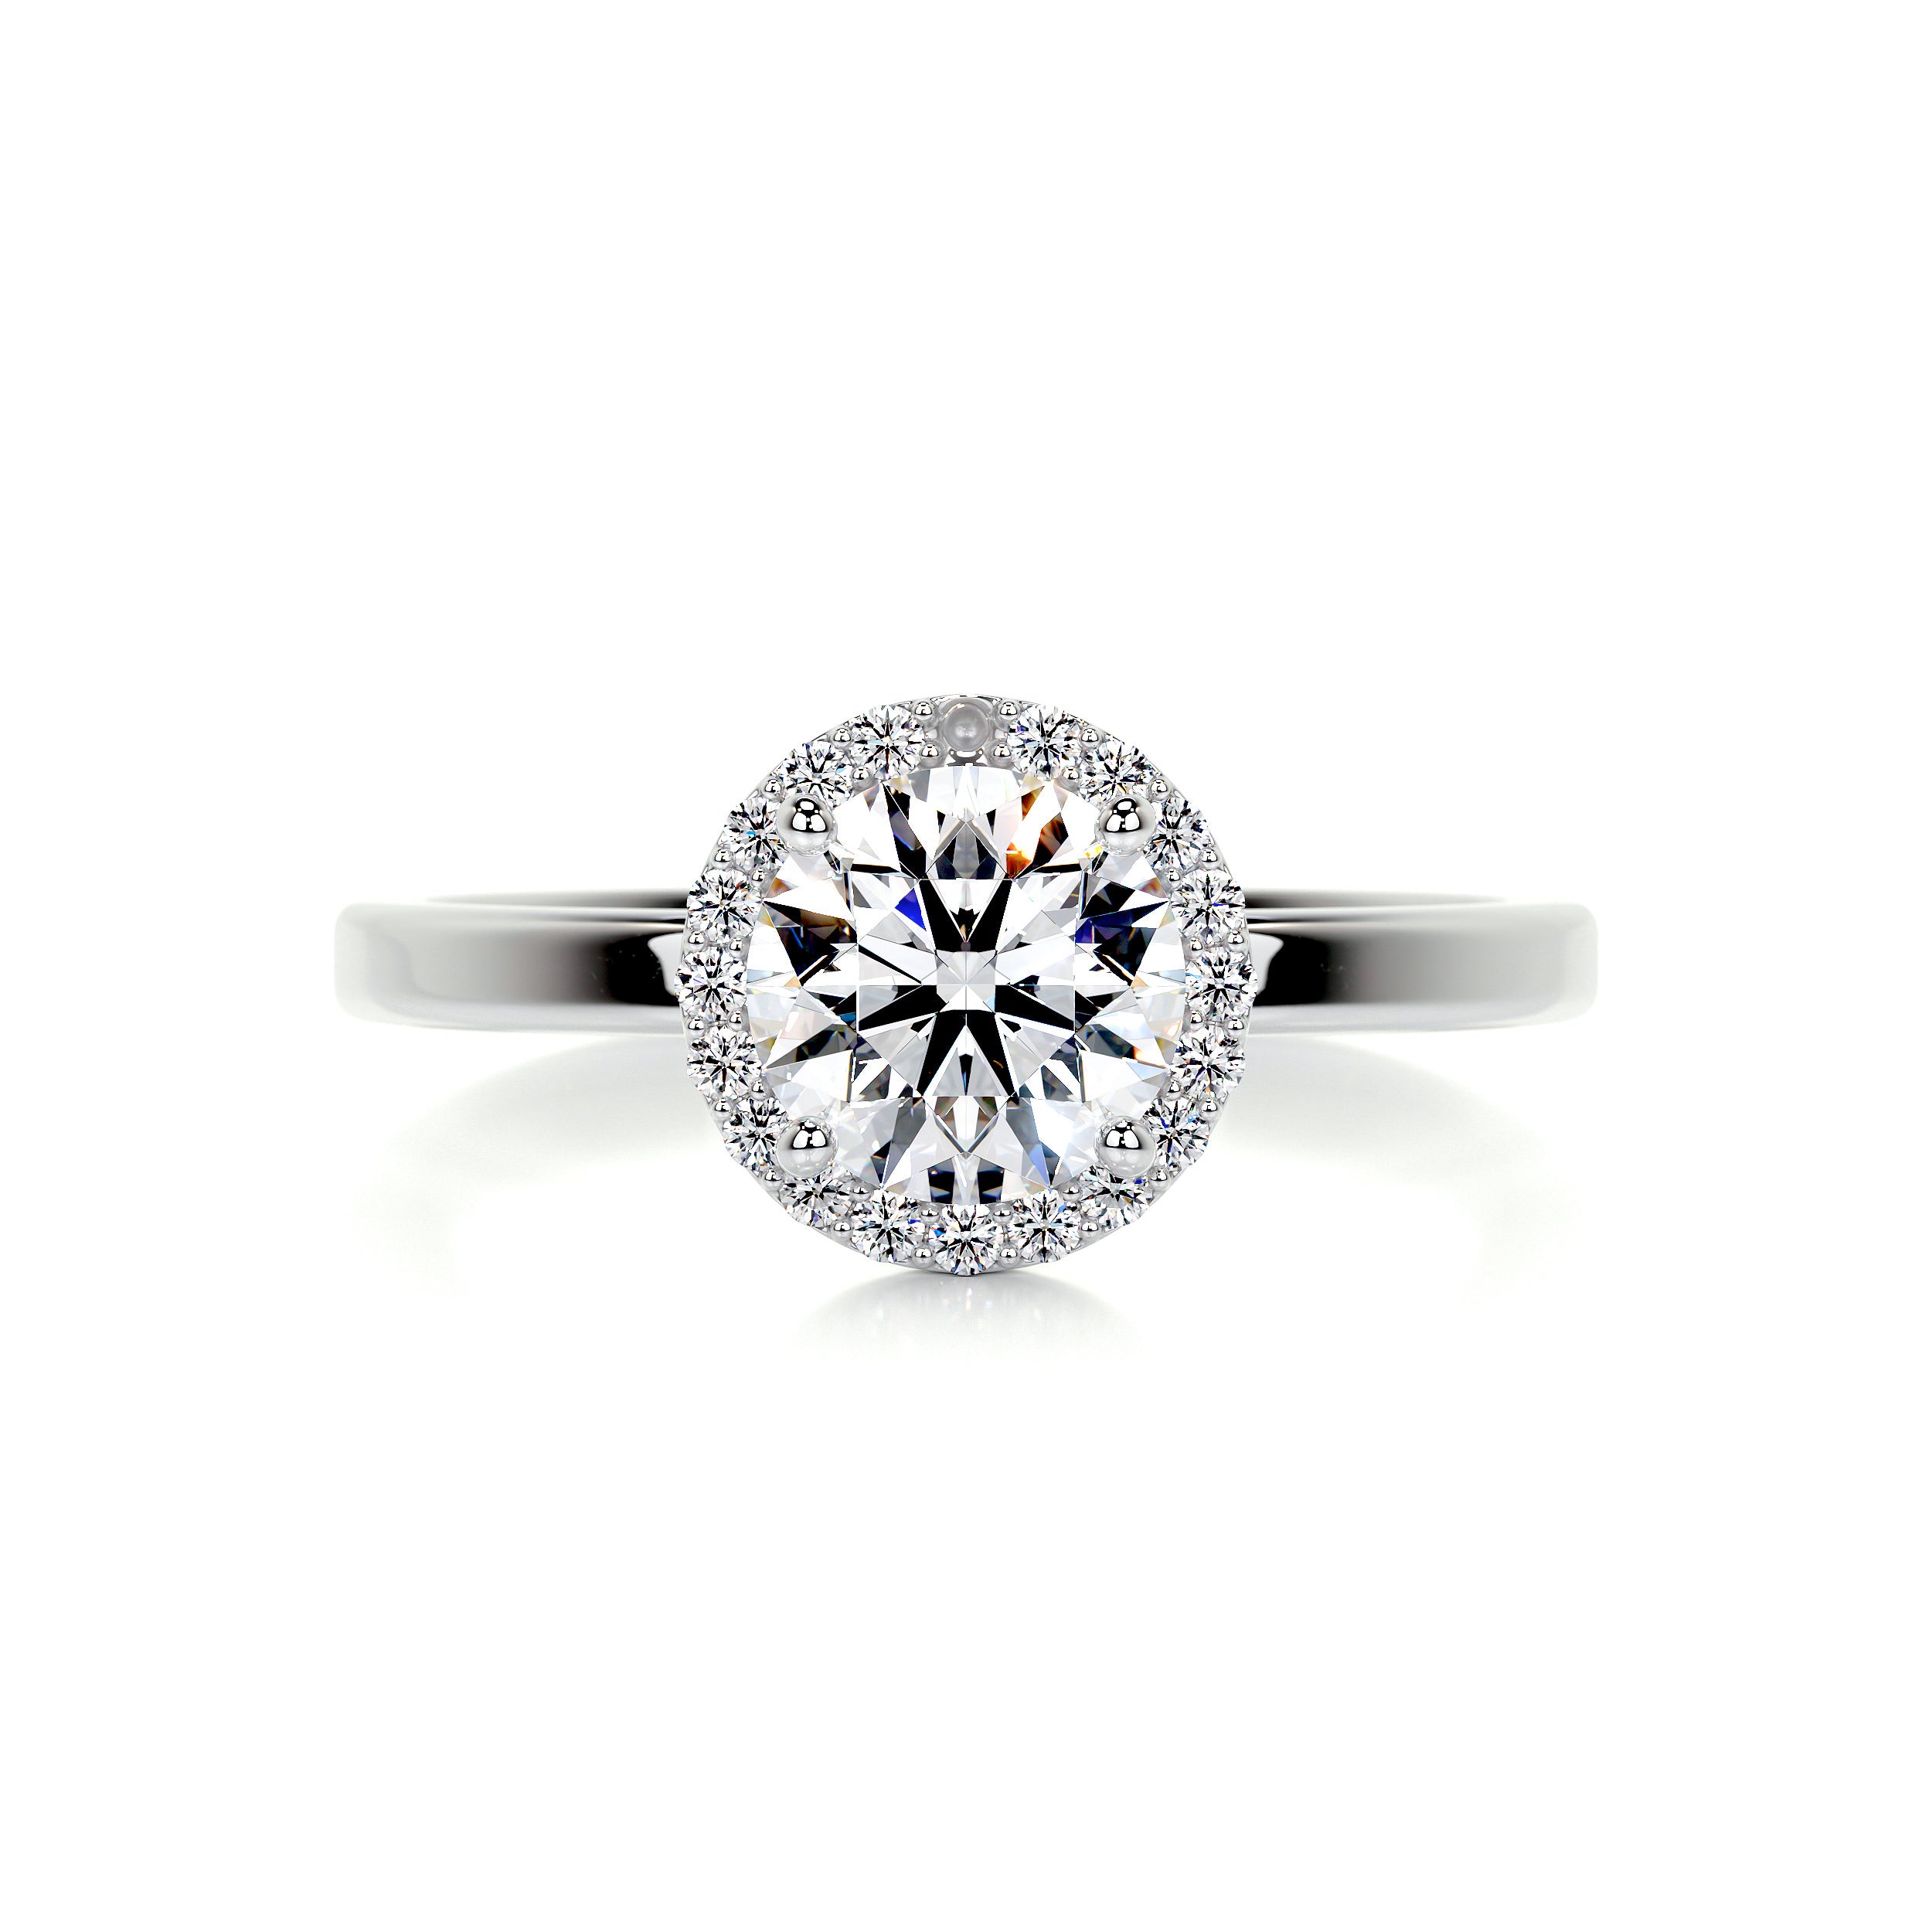 Anne Moissanite & Diamonds Ring   (1.10 Carat) -Platinum